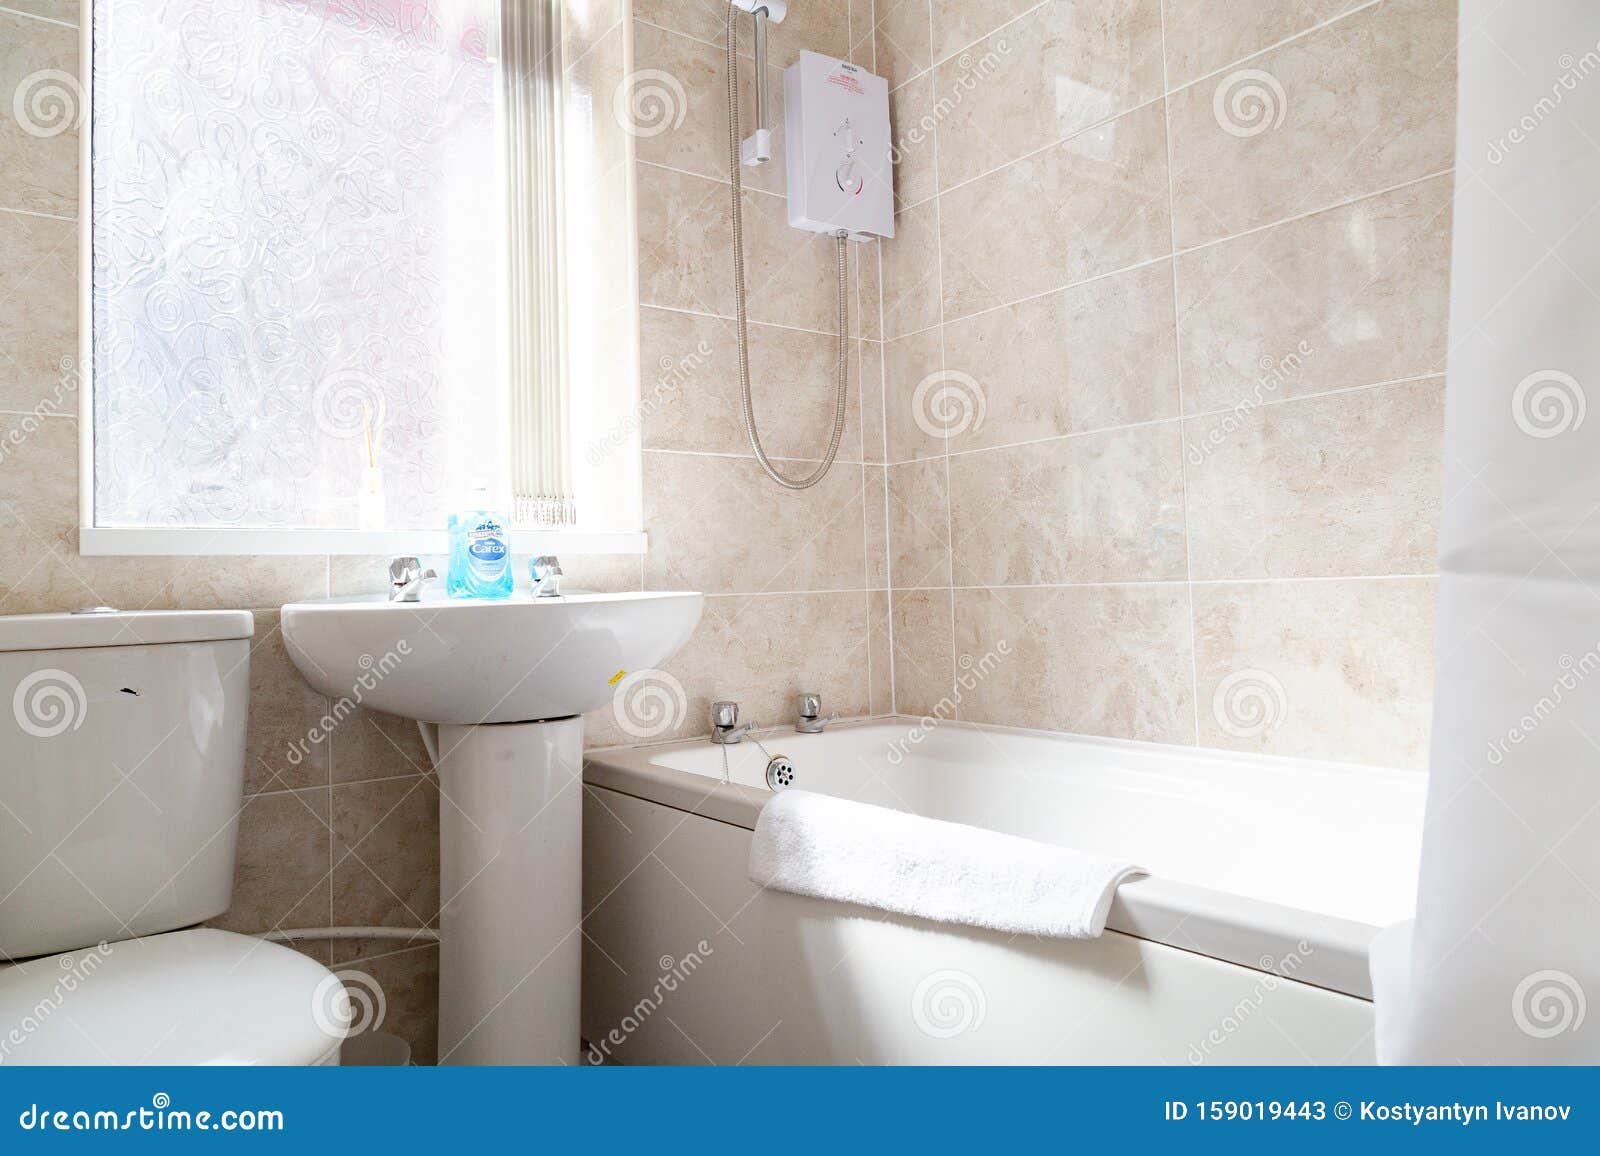 Heerlijk gemakkelijk chocola Engels Bathroom in wit stock afbeelding. Image of plank - 159019443